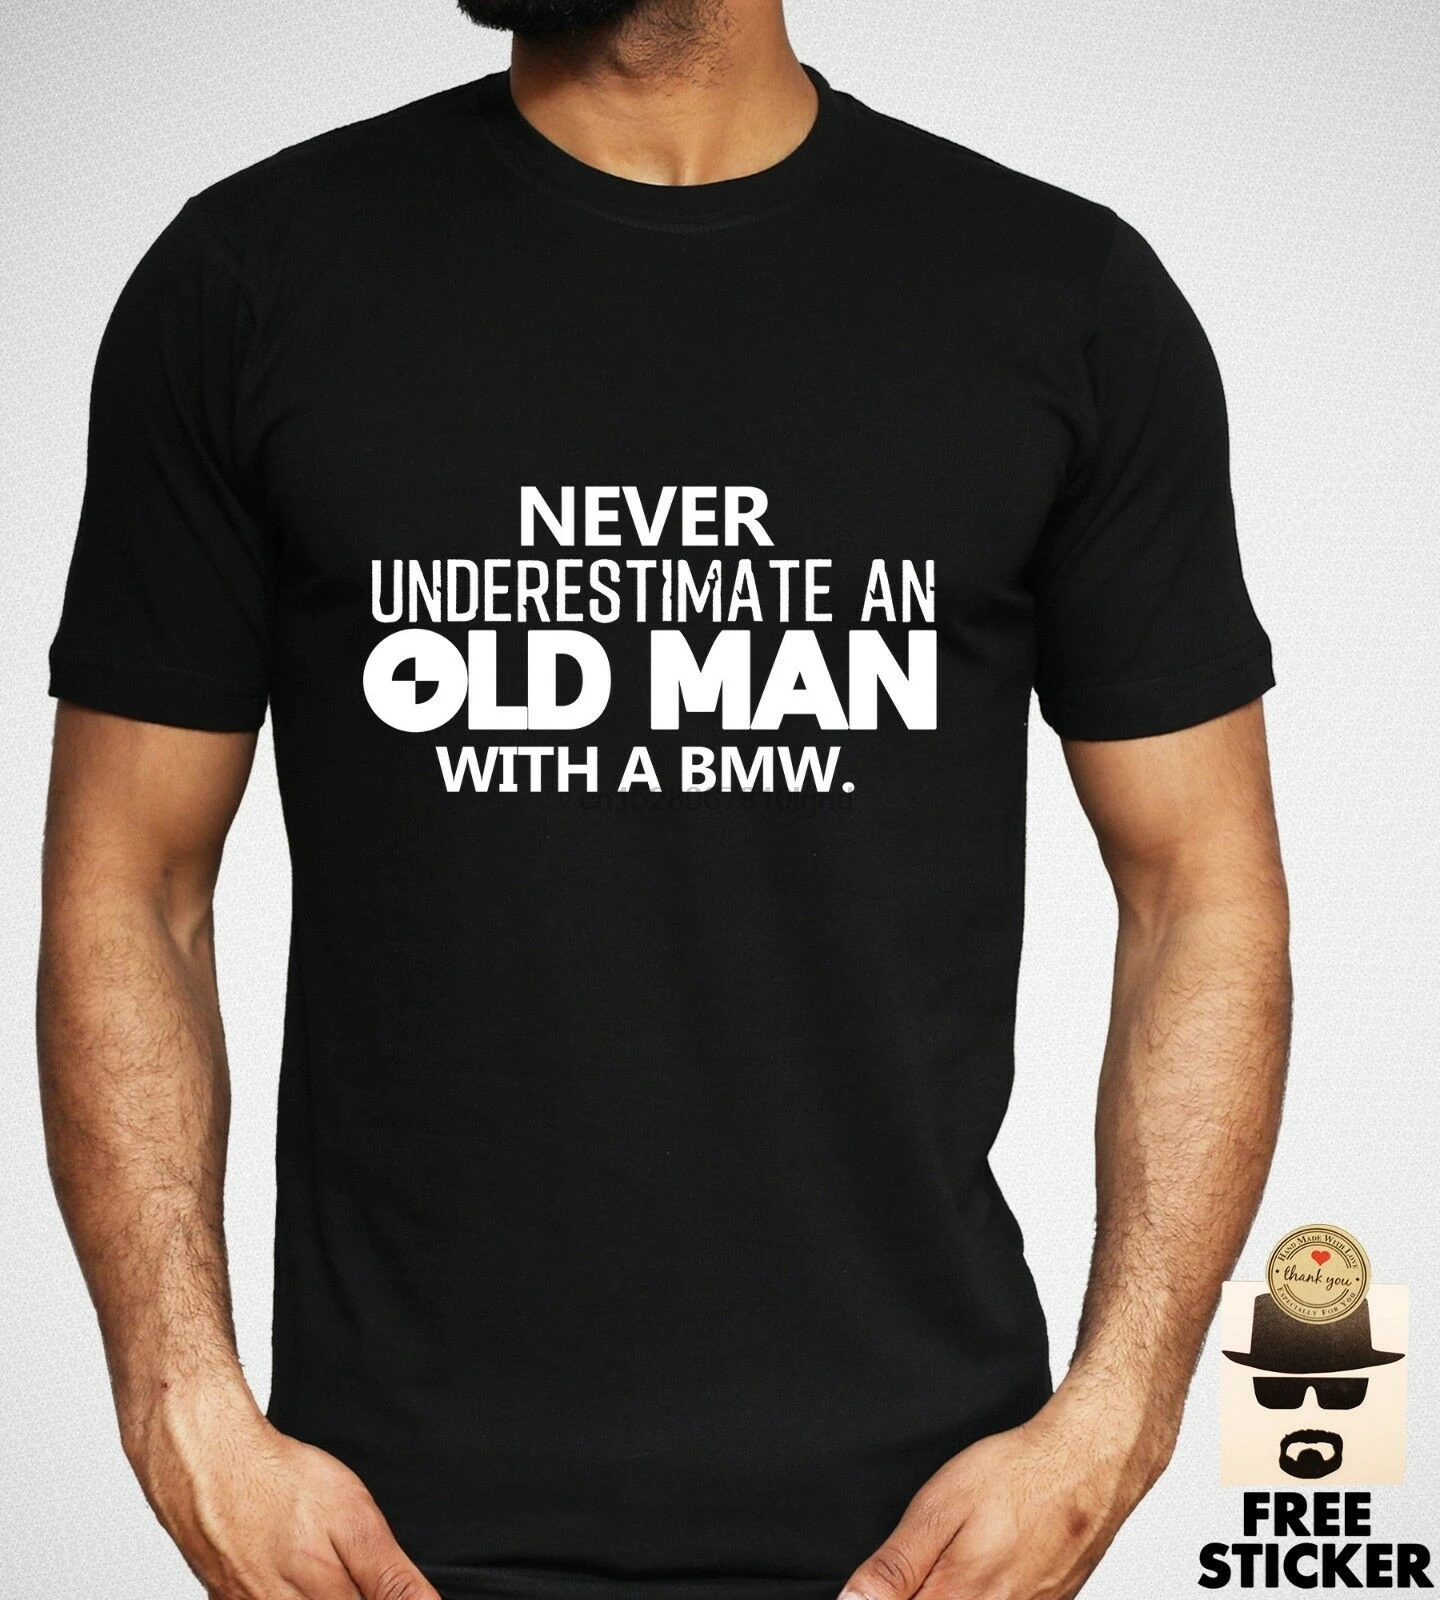 BMW Never Under Estimate An Old Man T-shirt Funny Car Owner Black Gift Top Men's